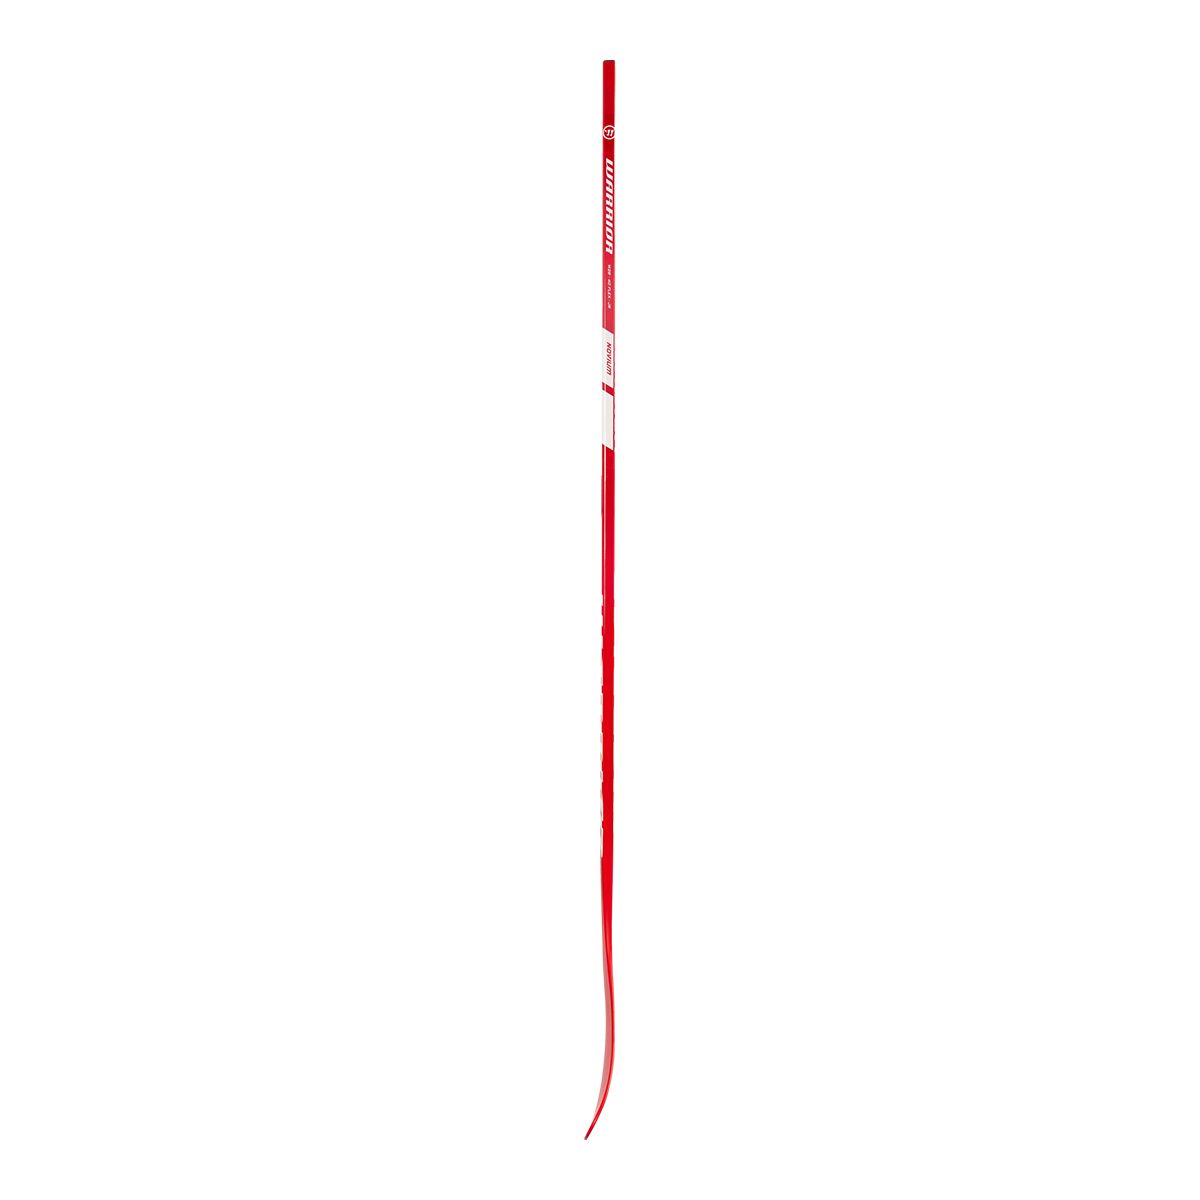 Warrior Novium SP composite hockey stick - Junior